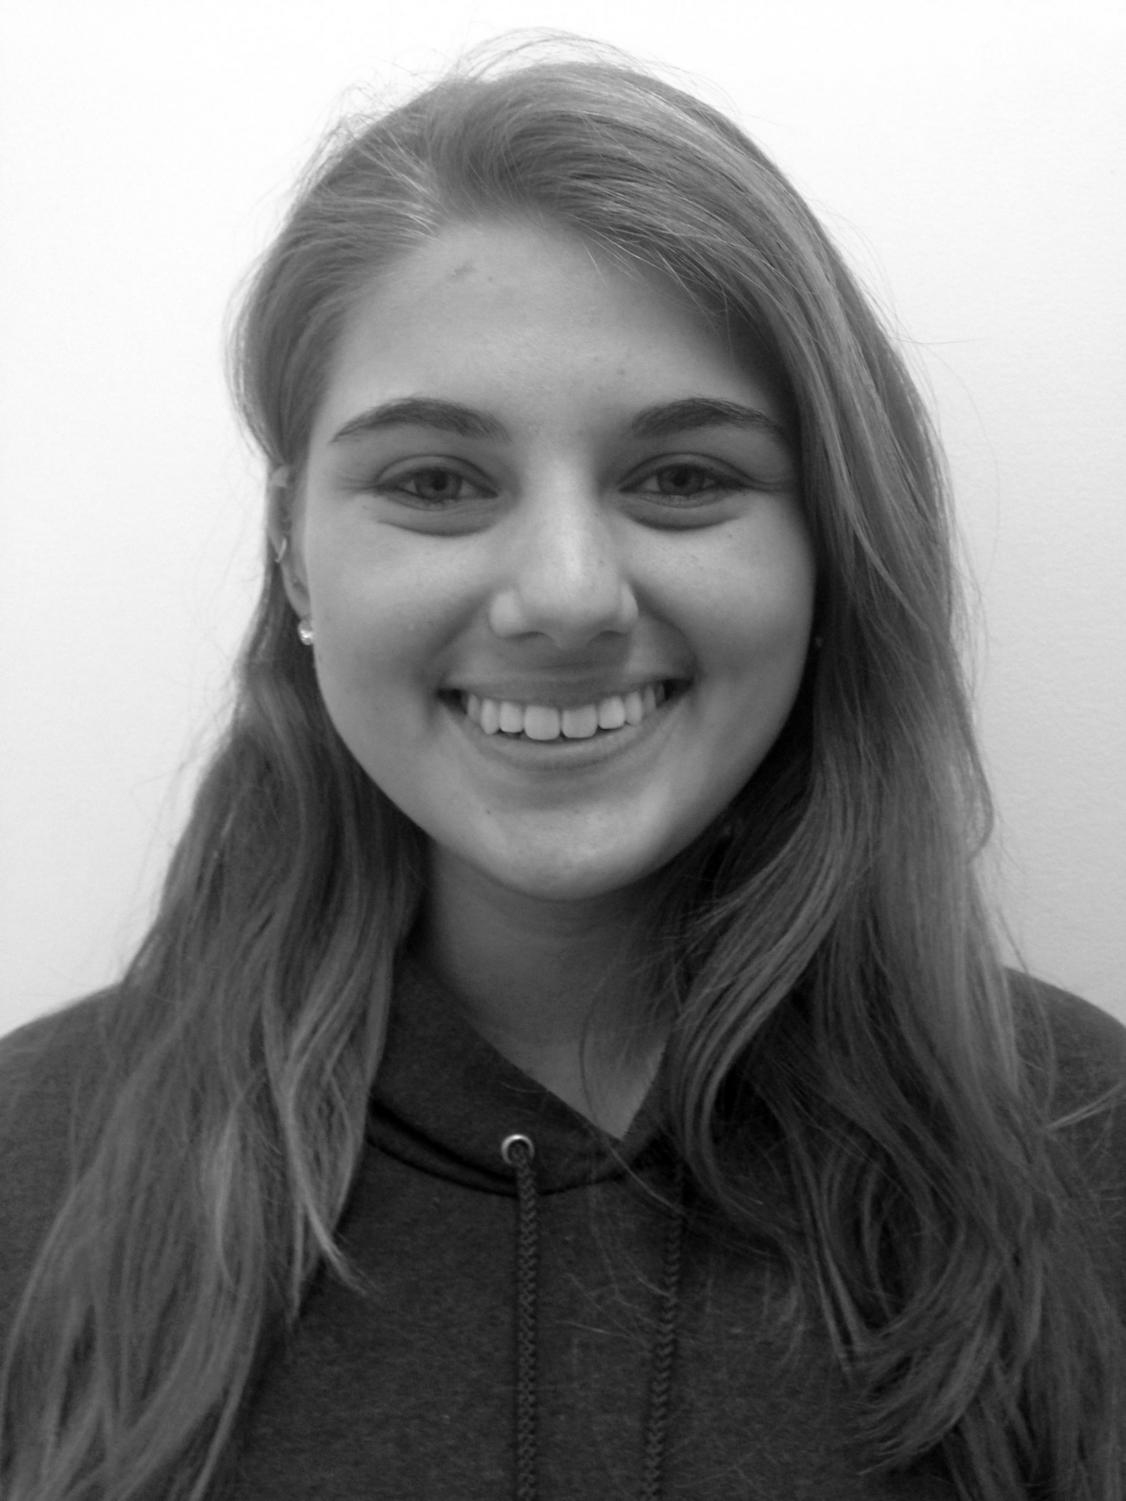 Laura Birnbaum, 2014, taken her junior year of high school in a school bathroom